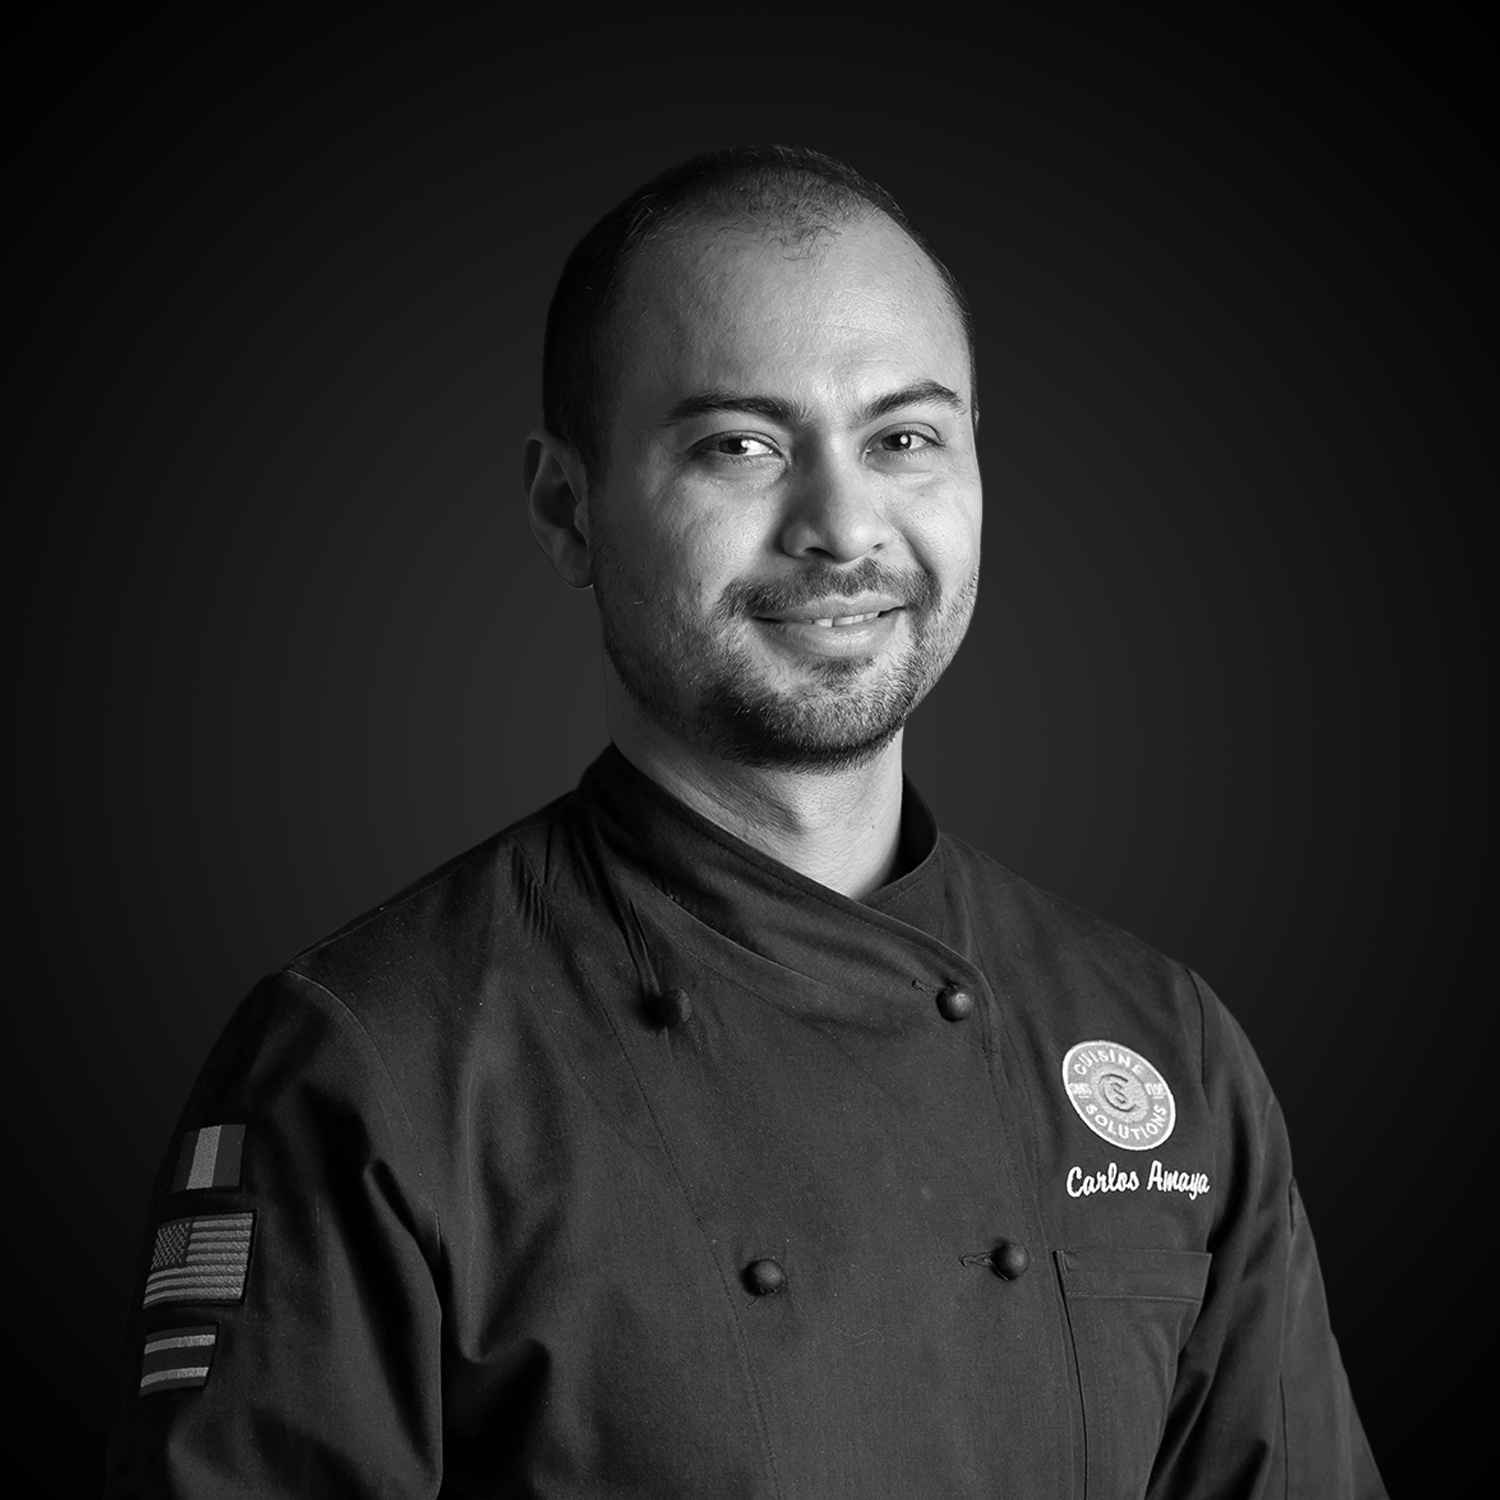 Portrait of Chef Carlos Amaya